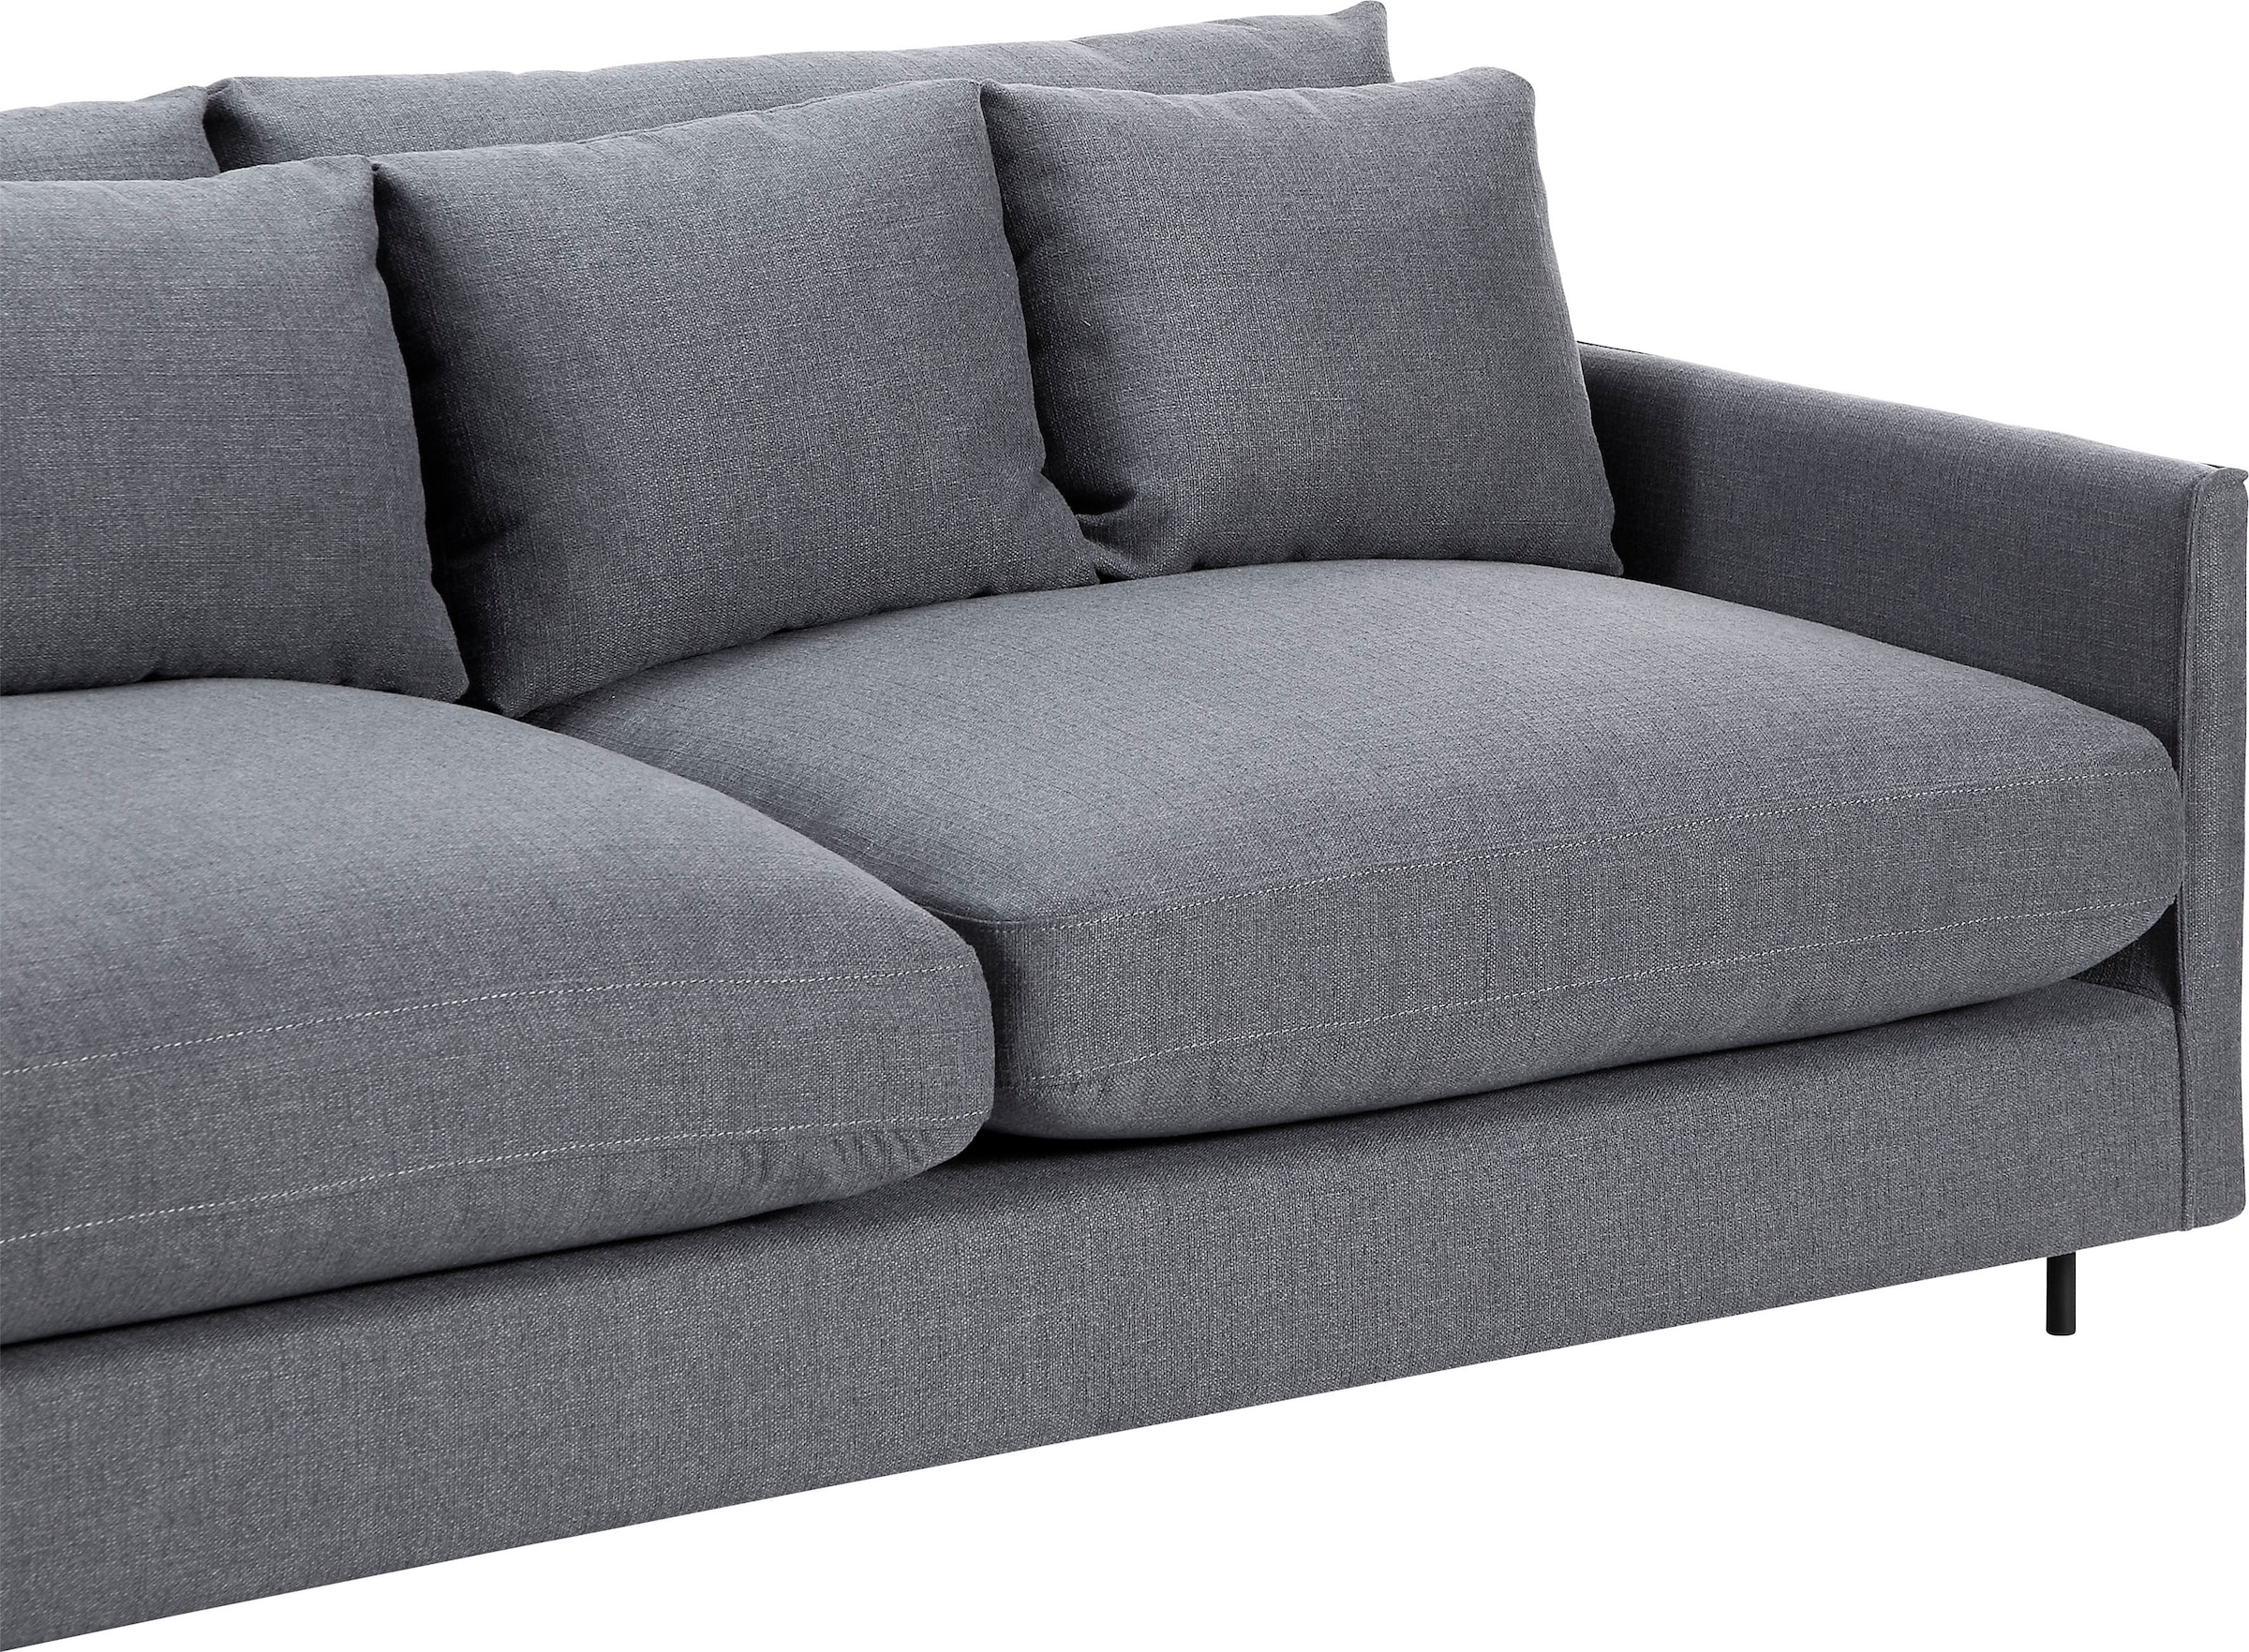 ATLANTIC home collection 3-Sitzer, versandkostenfrei im Sofa, Füllung auf mit extra Federn weich, skandinvisch Design